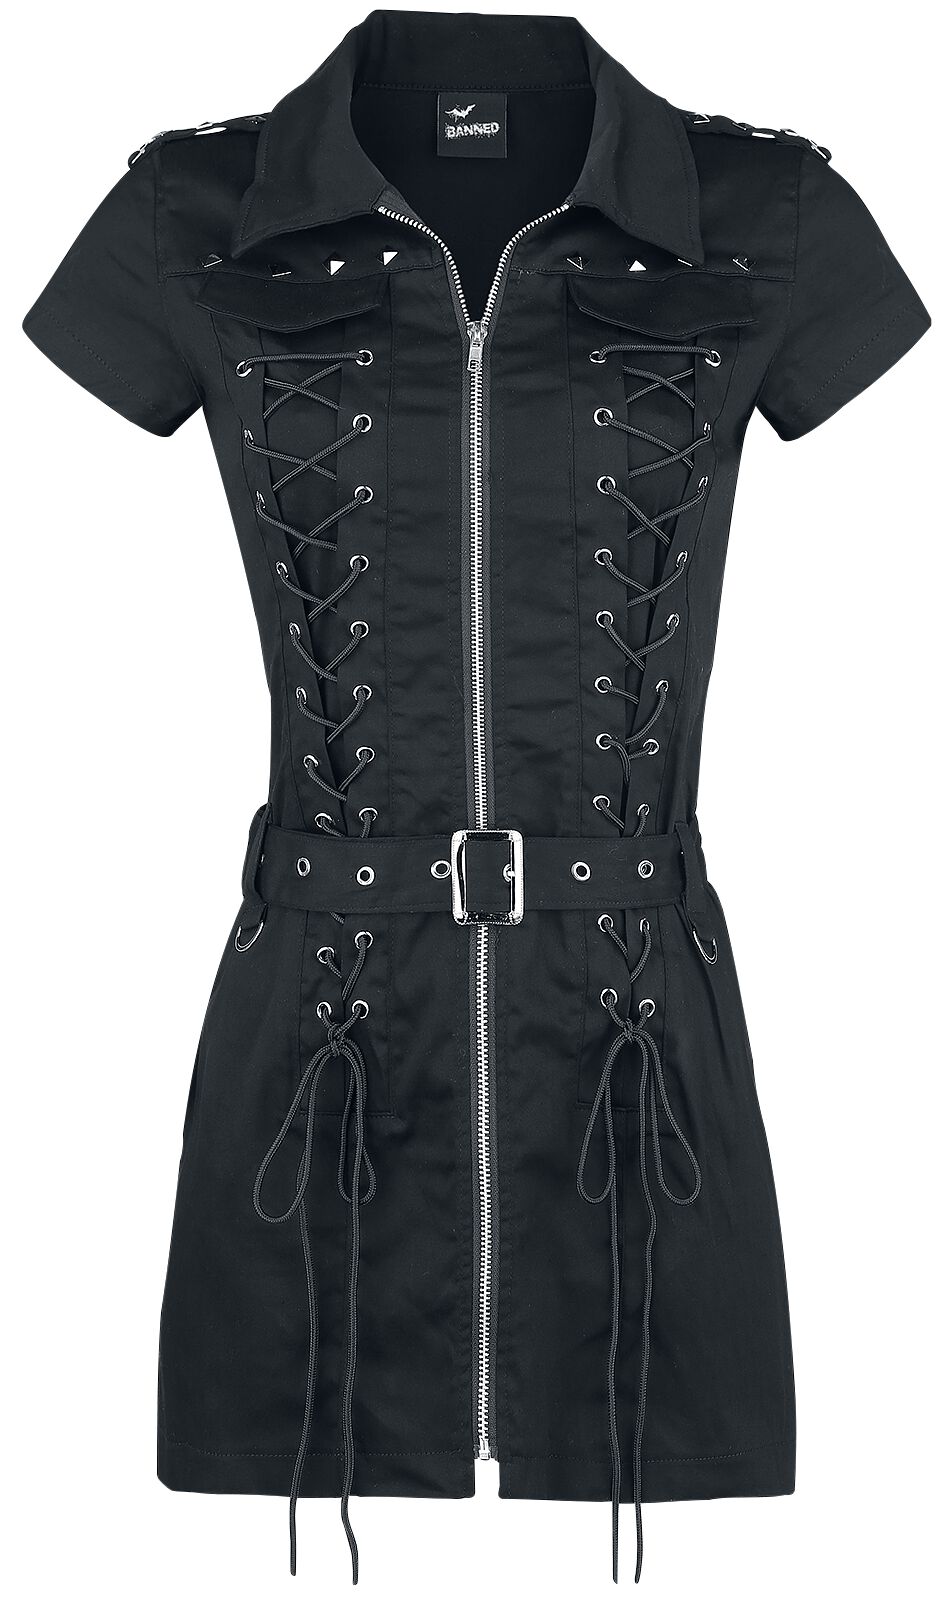 Banned Alternative - Gothic Kurzes Kleid - Mod Dress - XS bis XL - für Damen - Größe S - schwarz